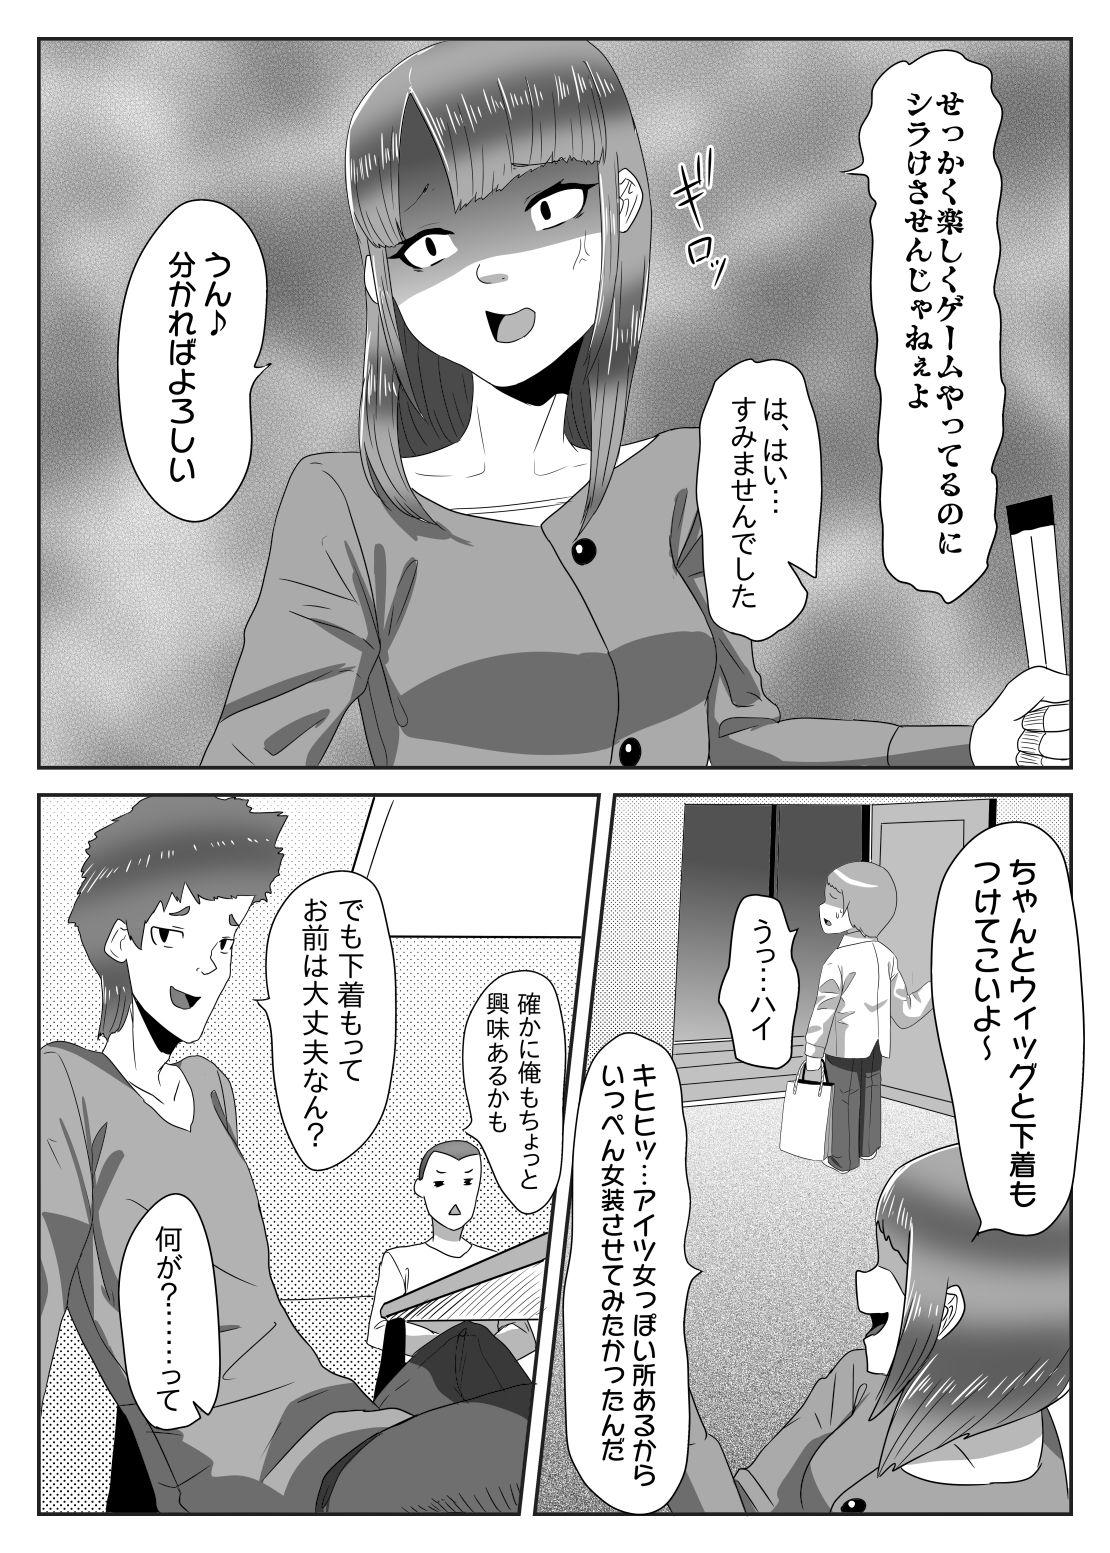 Nasty Batsu gēmu de josō sanpo sa se rarete itara ikemen futanari musume ni tasuke raremashita - Original Free Hardcore - Page 5